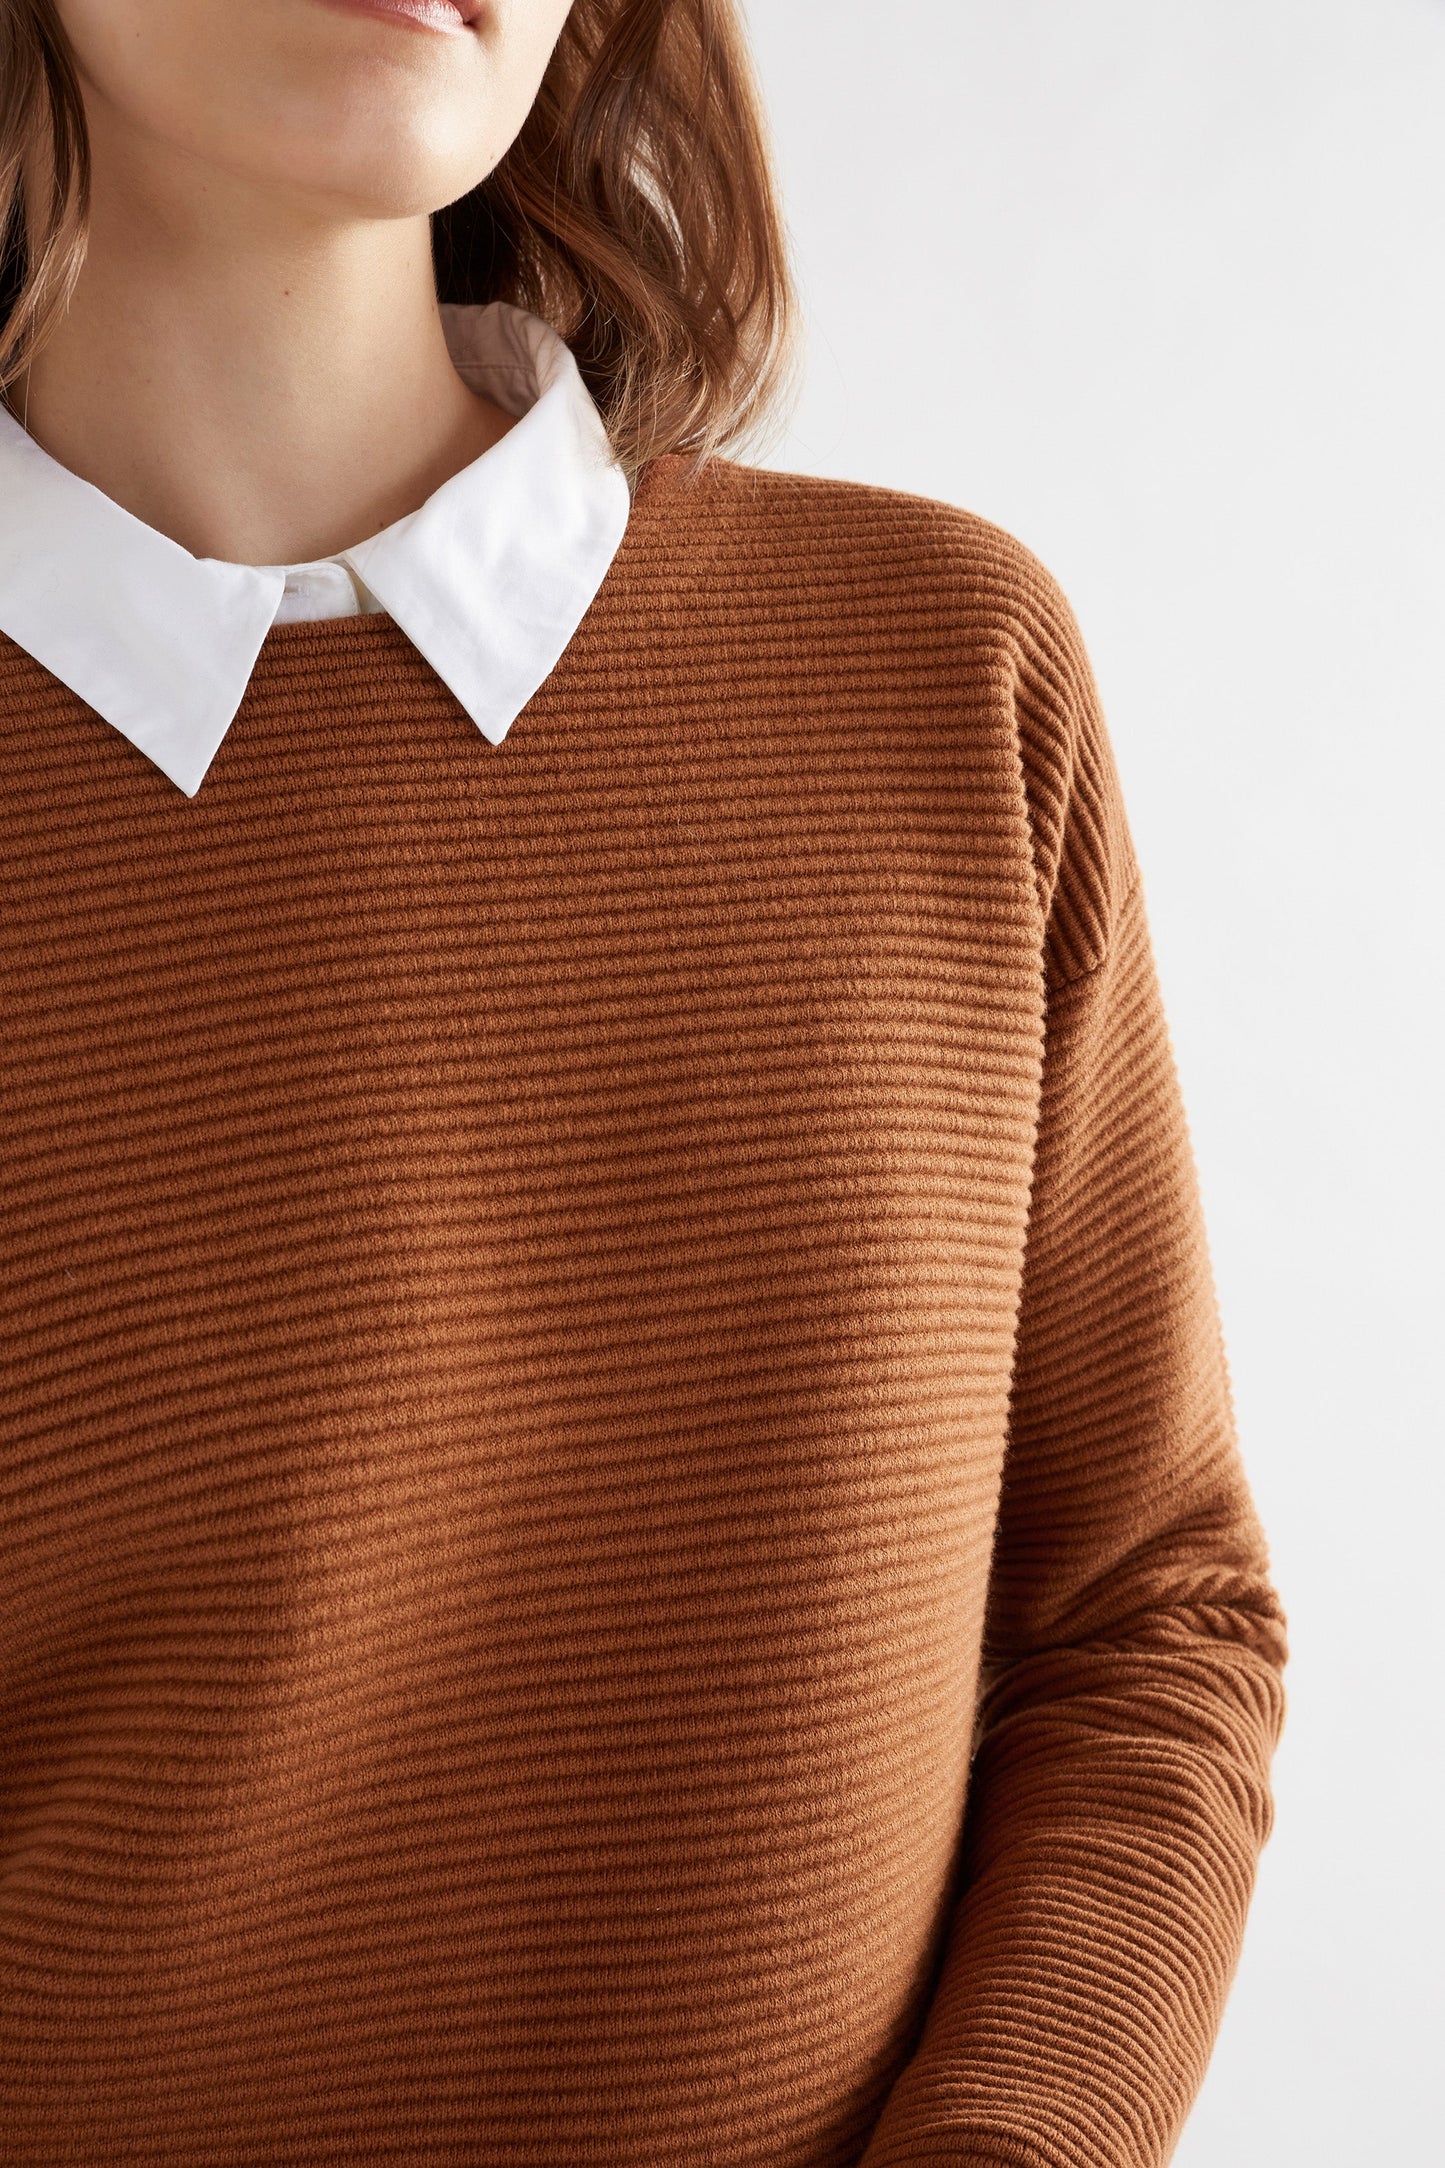 Neiu Cotton Merino Round Neck Ottoman Sweater Model Front detail | COPPER